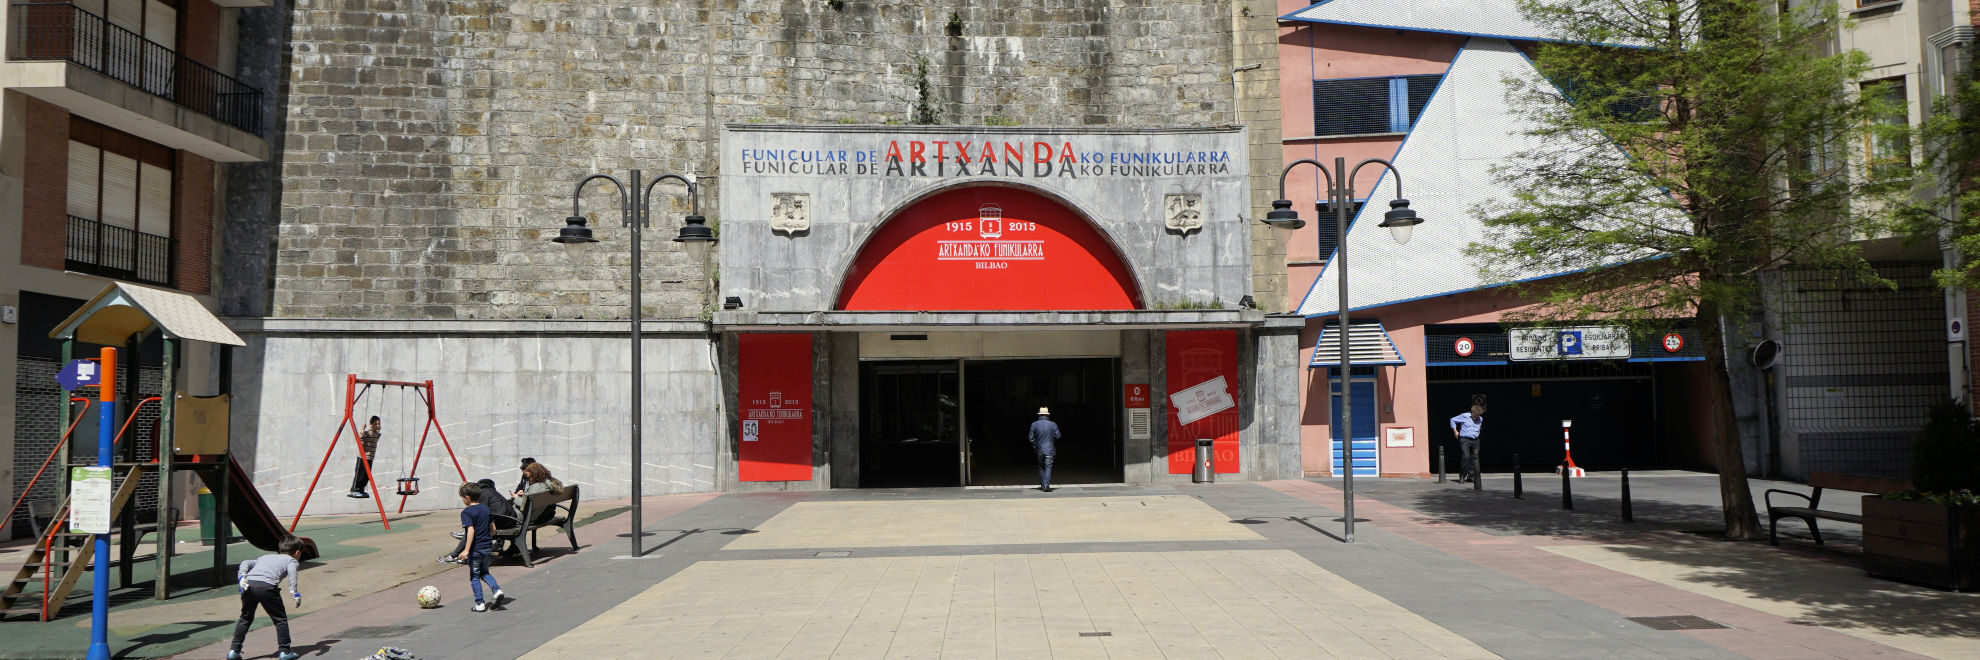 Bilbo: Artxandako Funikularra <br>Bilbao: Funicular de Artxanda